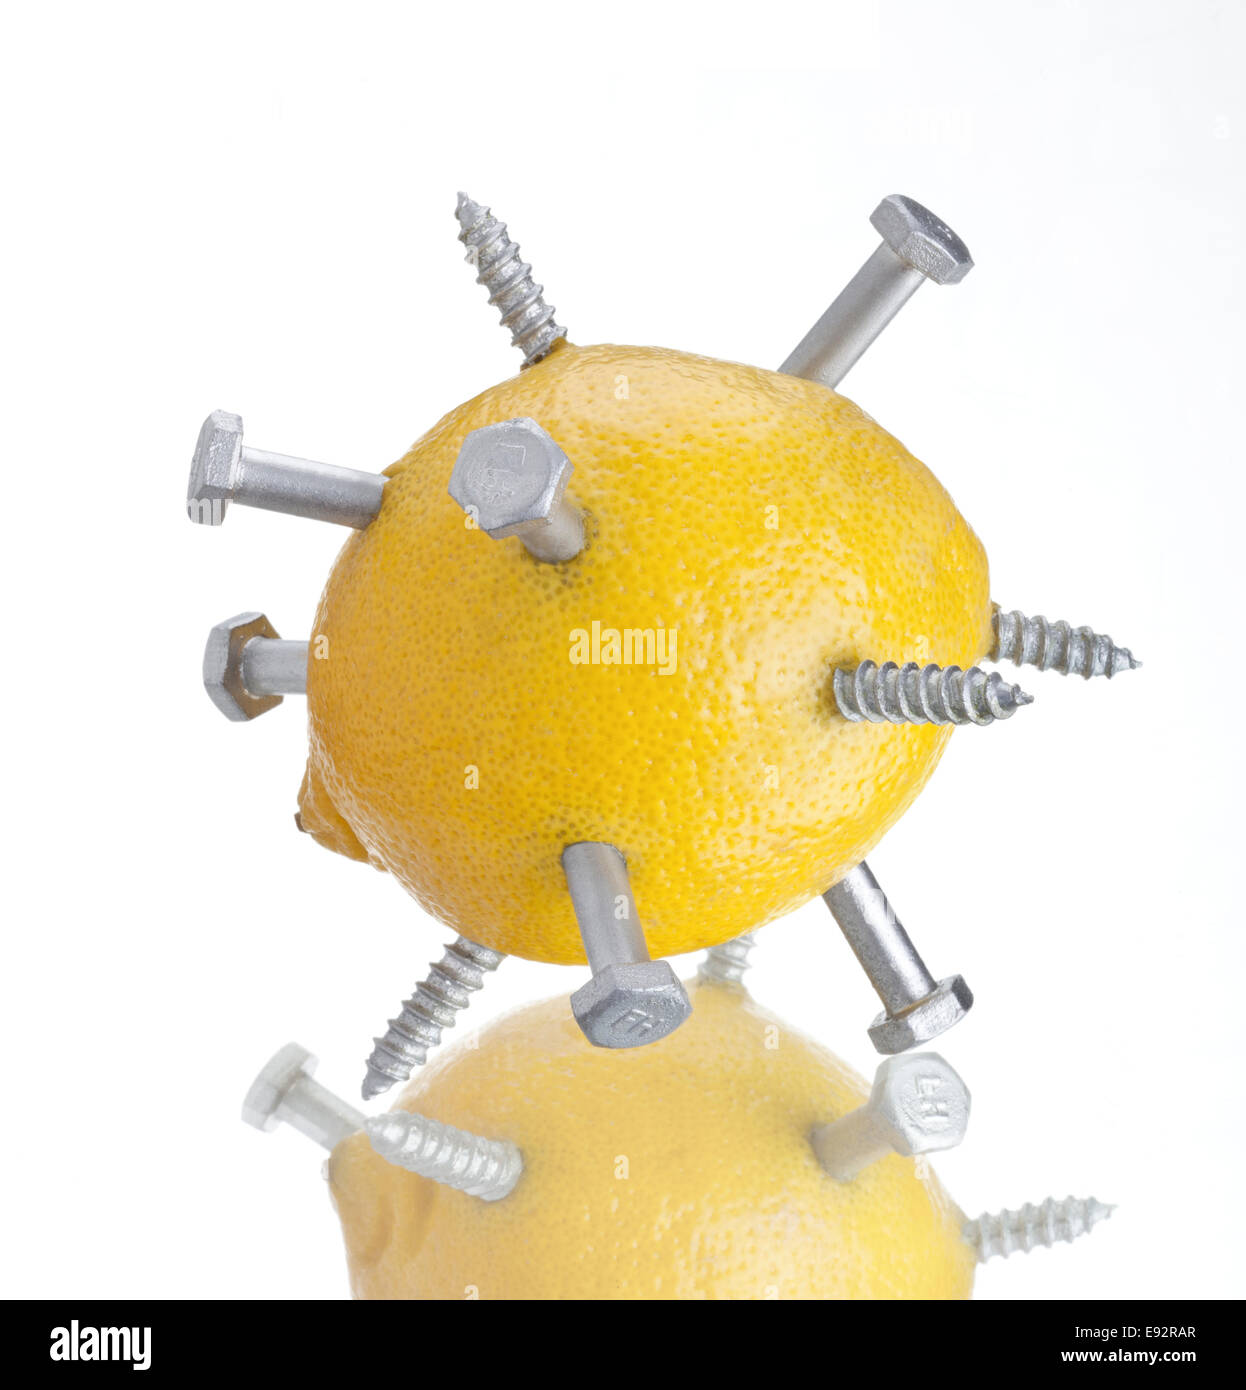 Limone giallo lucido con bulloni metallici piercing la buccia su una superficie riflettente Foto Stock